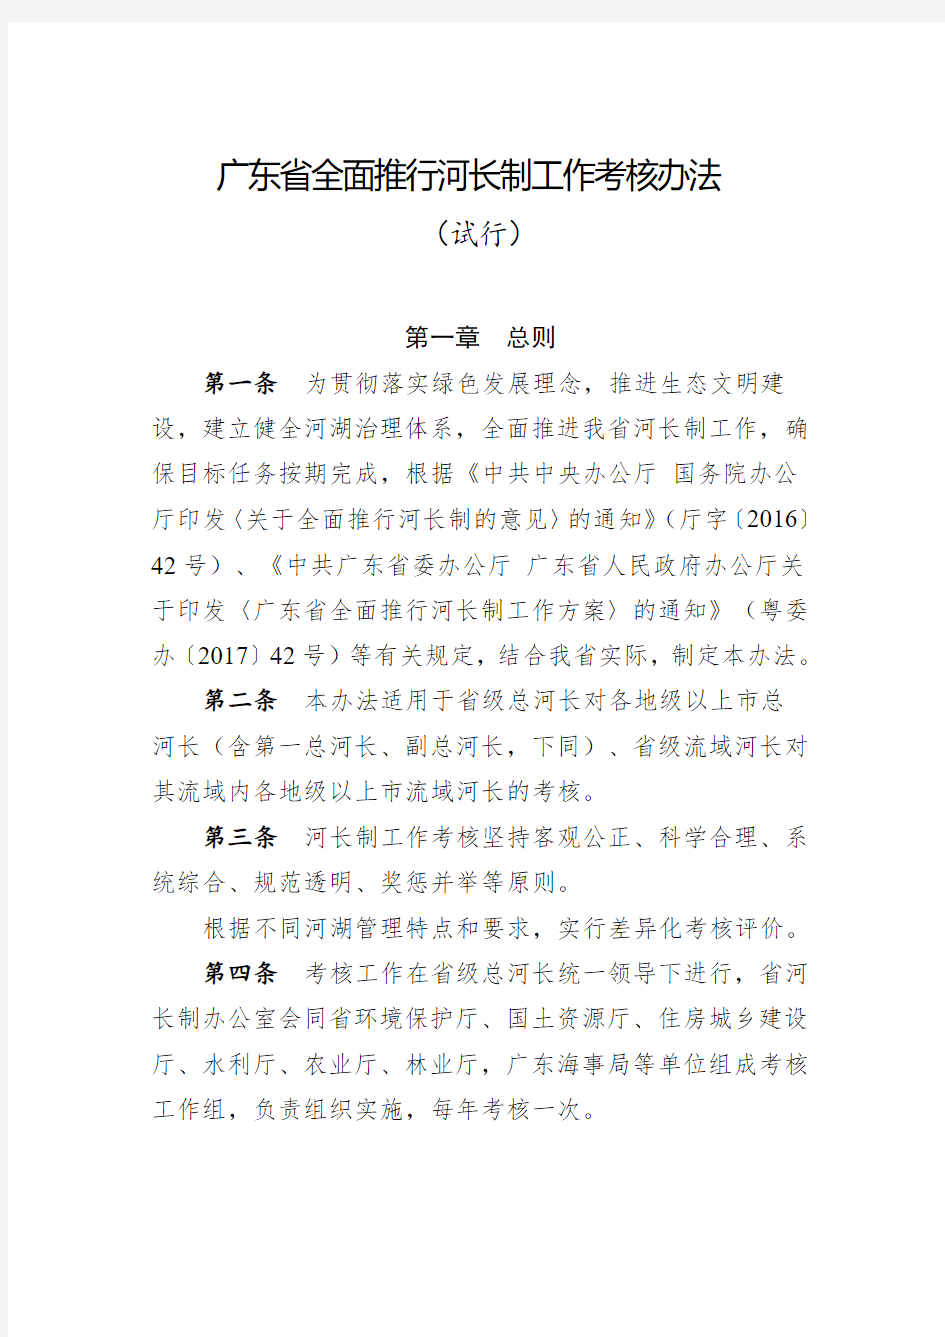 4广东省全面推行河长制工作考核办法